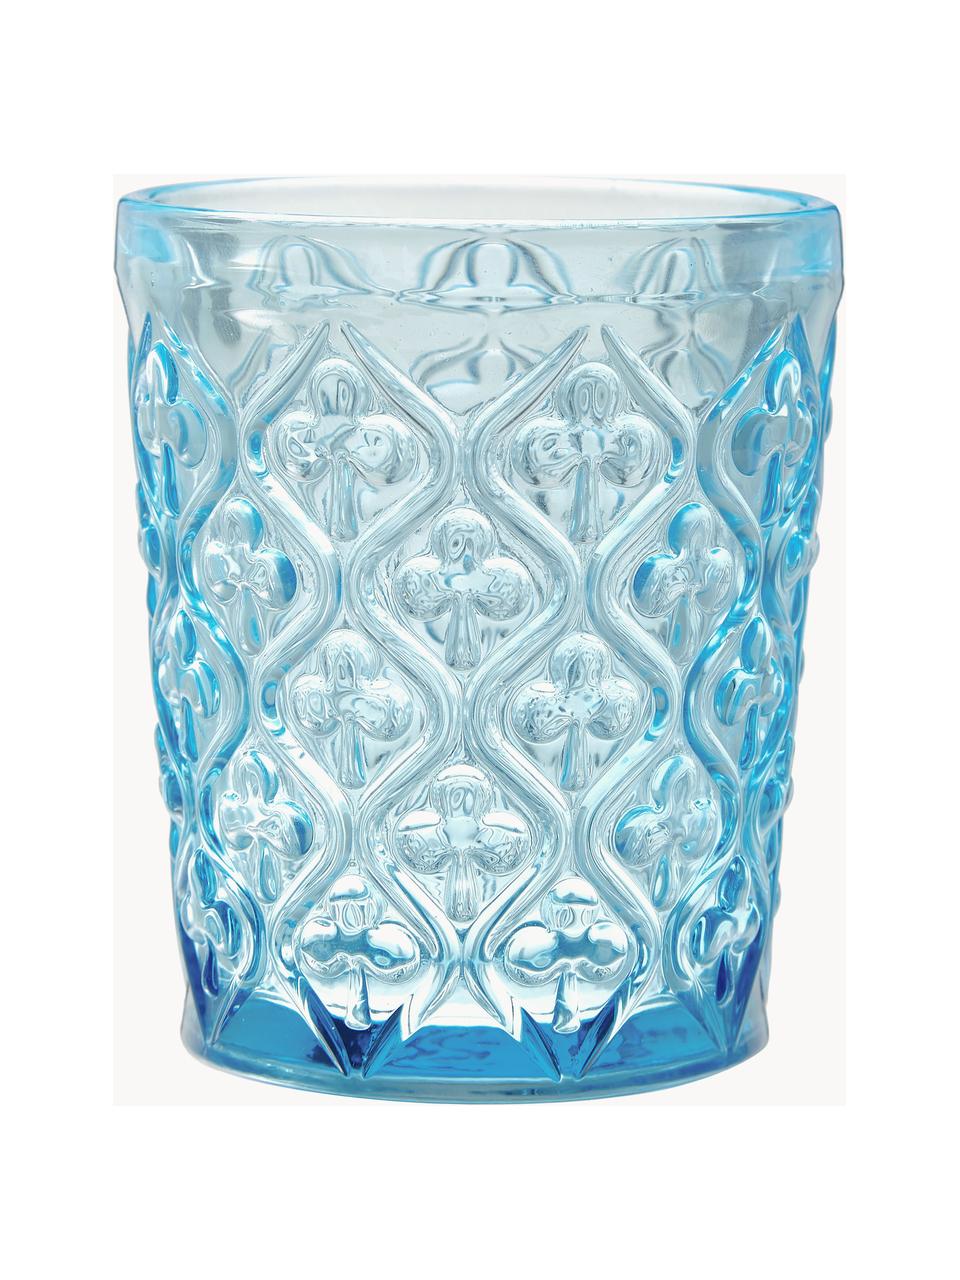 Waterglazen Marrakech met structuurpatroon, set van 6, Glas, Meerkleurig, transparant, Ø 8 x H 10 cm, 240 ml